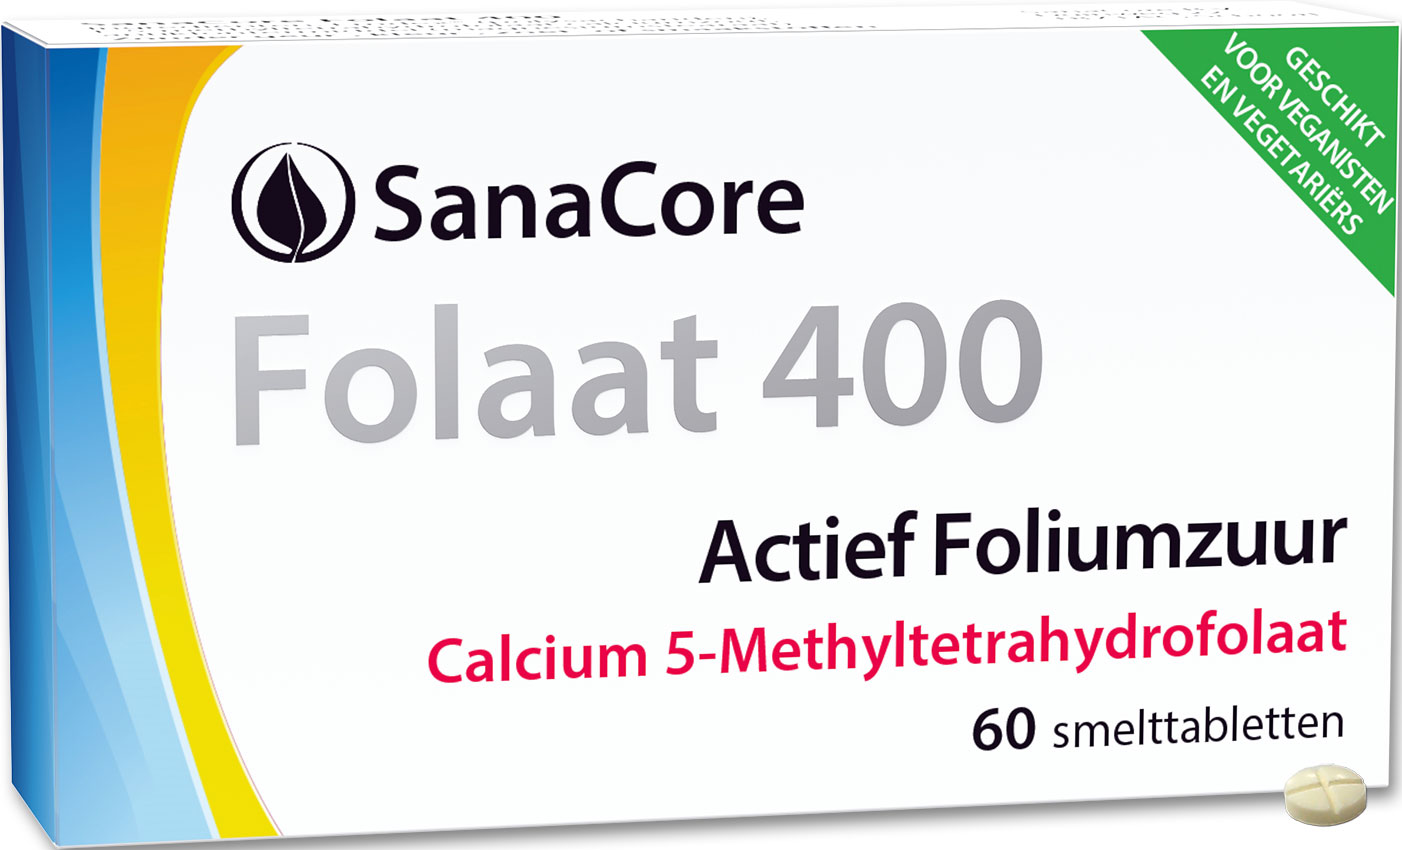 Folaat 400 Calcium